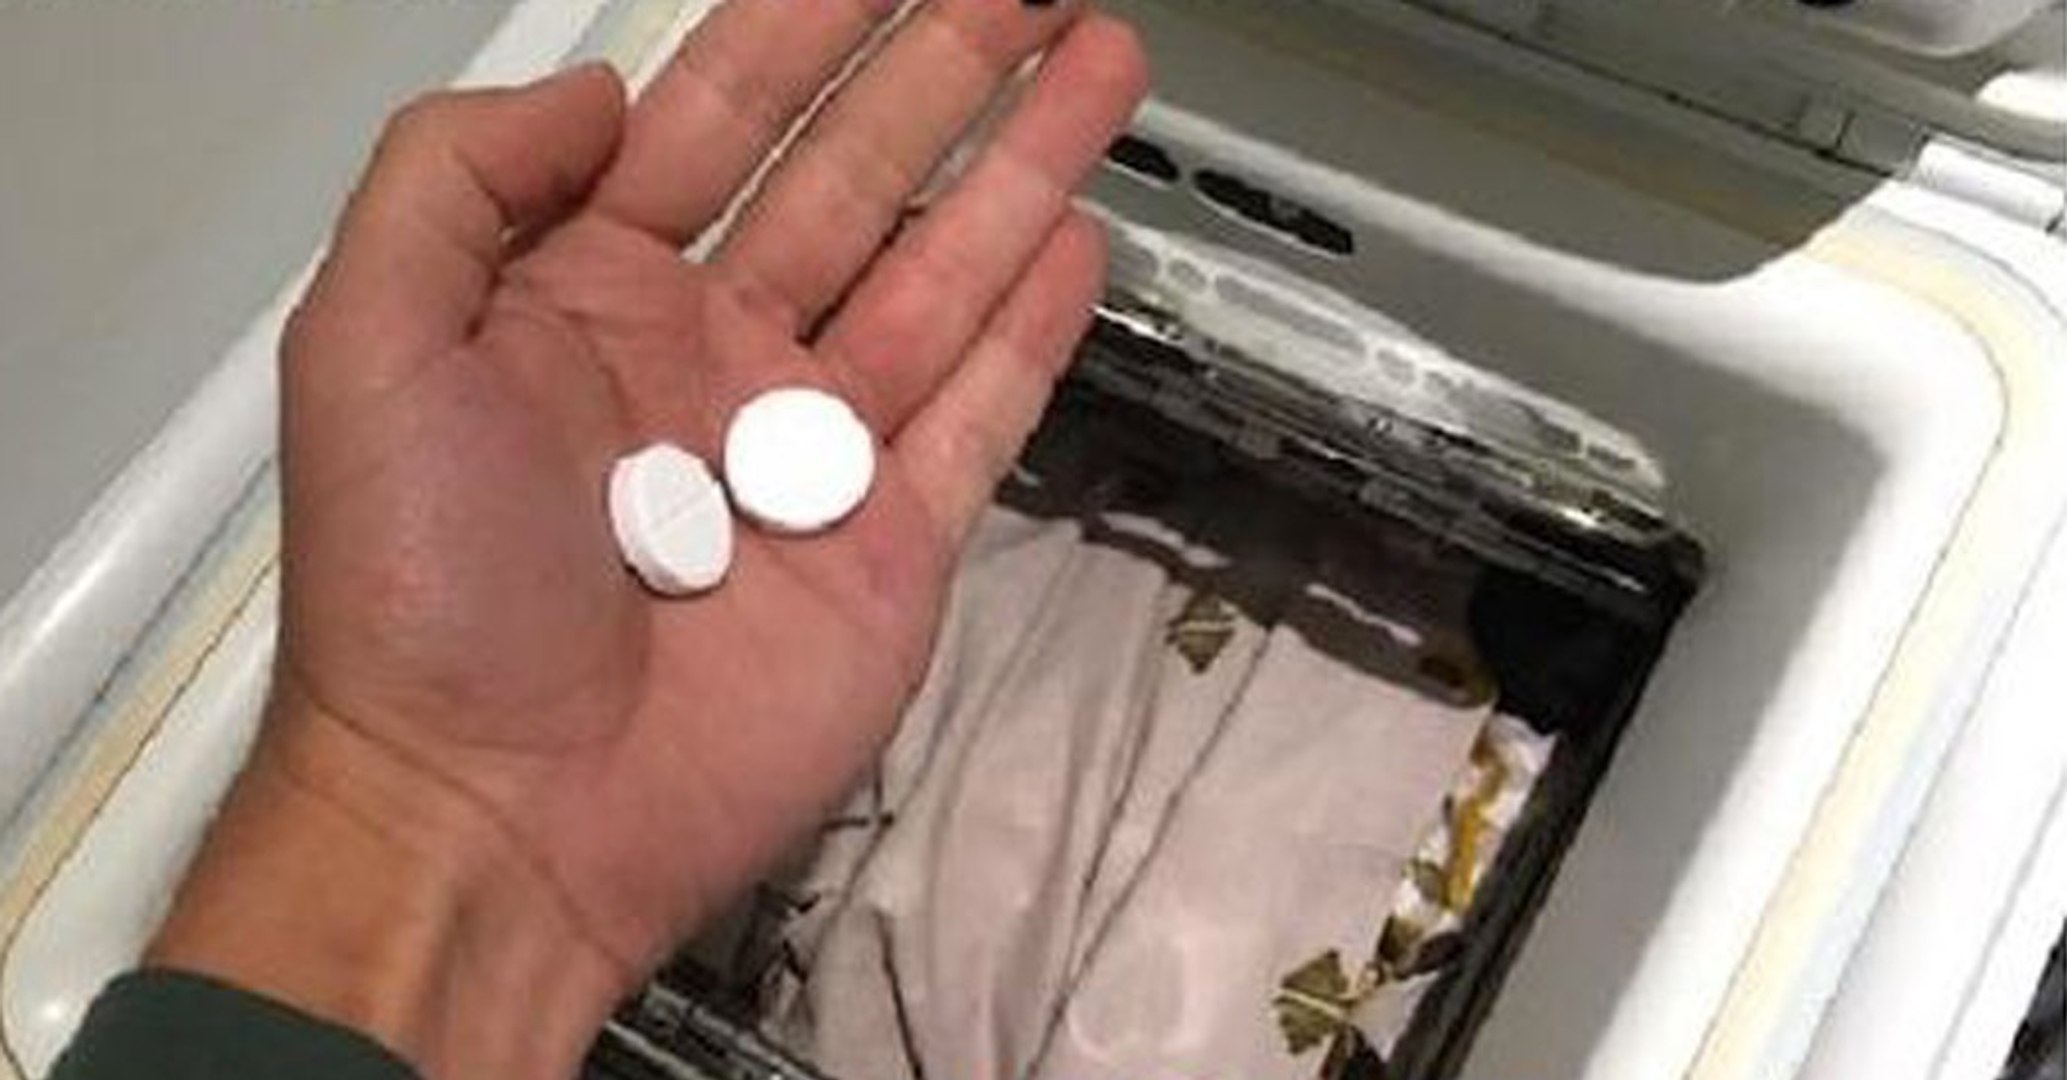 Mettre un sachet d'aspirine dans sa machine à laver permet d'obtenir un  linge plus blanc - Vidéo Dailymotion